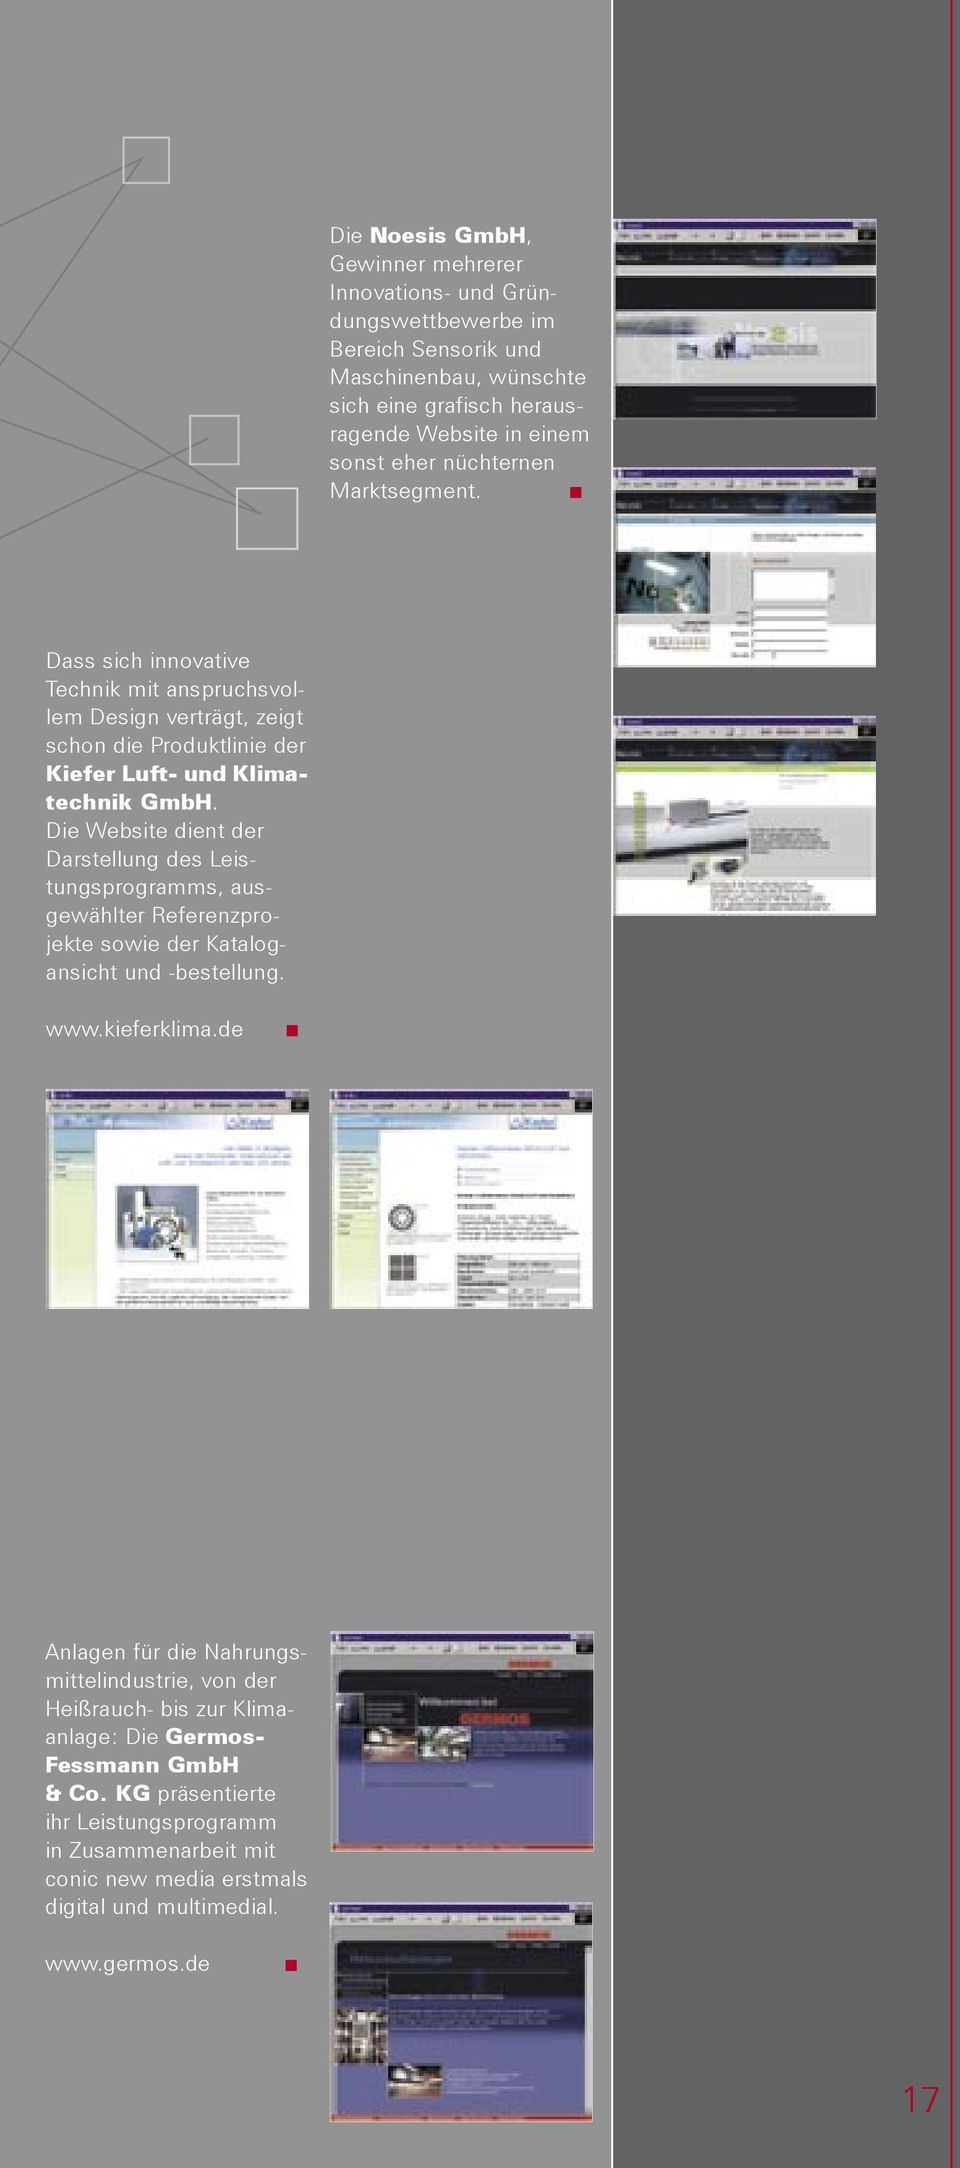 Die Website dient der Darstellung des Leistungsprogramms, ausgewählter Referenzprojekte sowie der Katalogansicht und -bestellung. www.kieferklima.